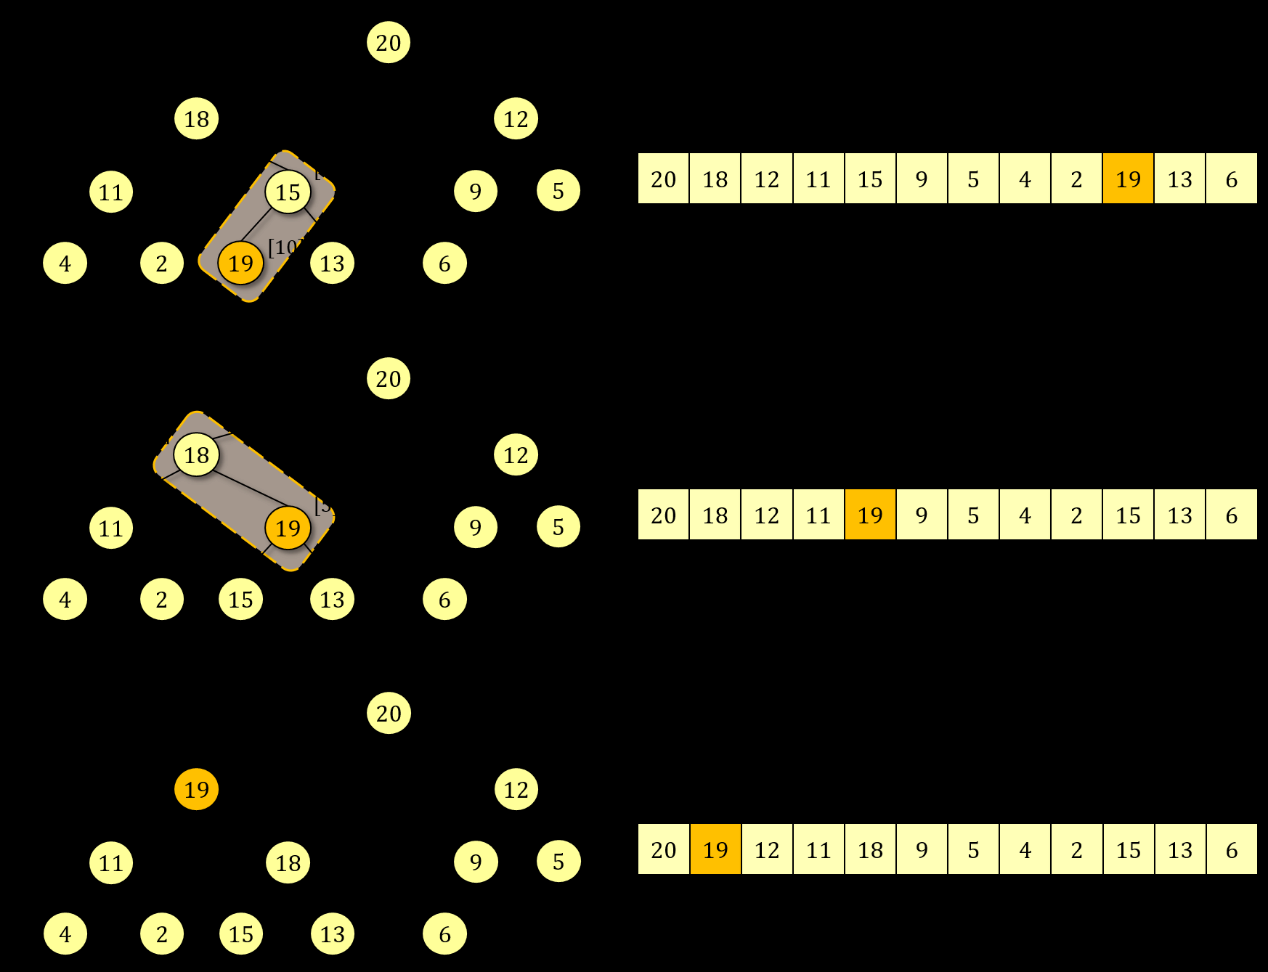 Εικόνα 6.3: Παράδειγμα εκτέλεσης της διαδικασίας αποκατάσταση άνω(10) στο δυαδικό σωρό μέγιστου της Εικόνας 6.2, μετά την αλλαγή του κλειδιού στη θέση 10. Η Εικόνα 6.